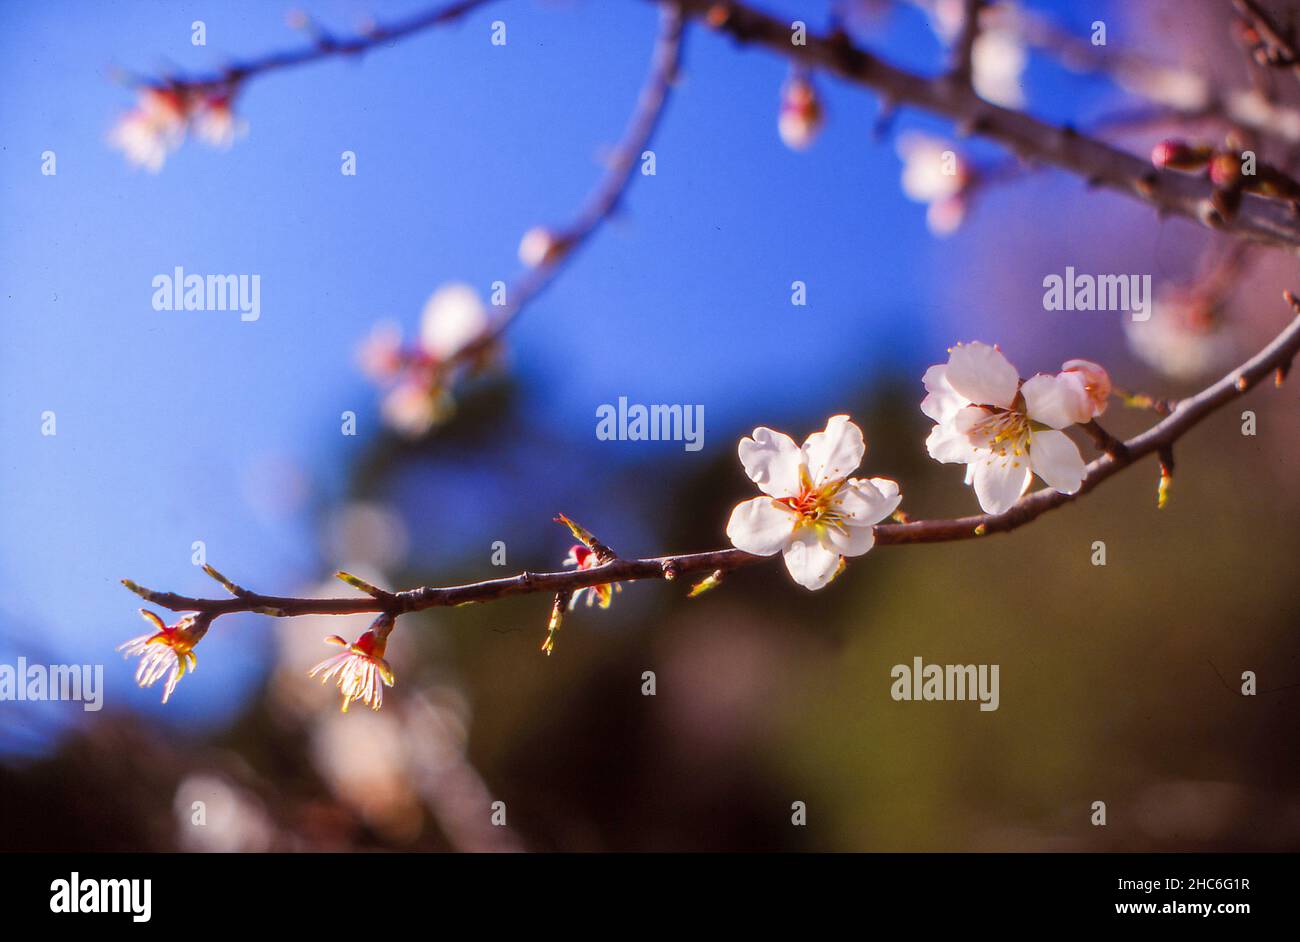 Almond tree blossom, Mandelbaum Blüte Stock Photo